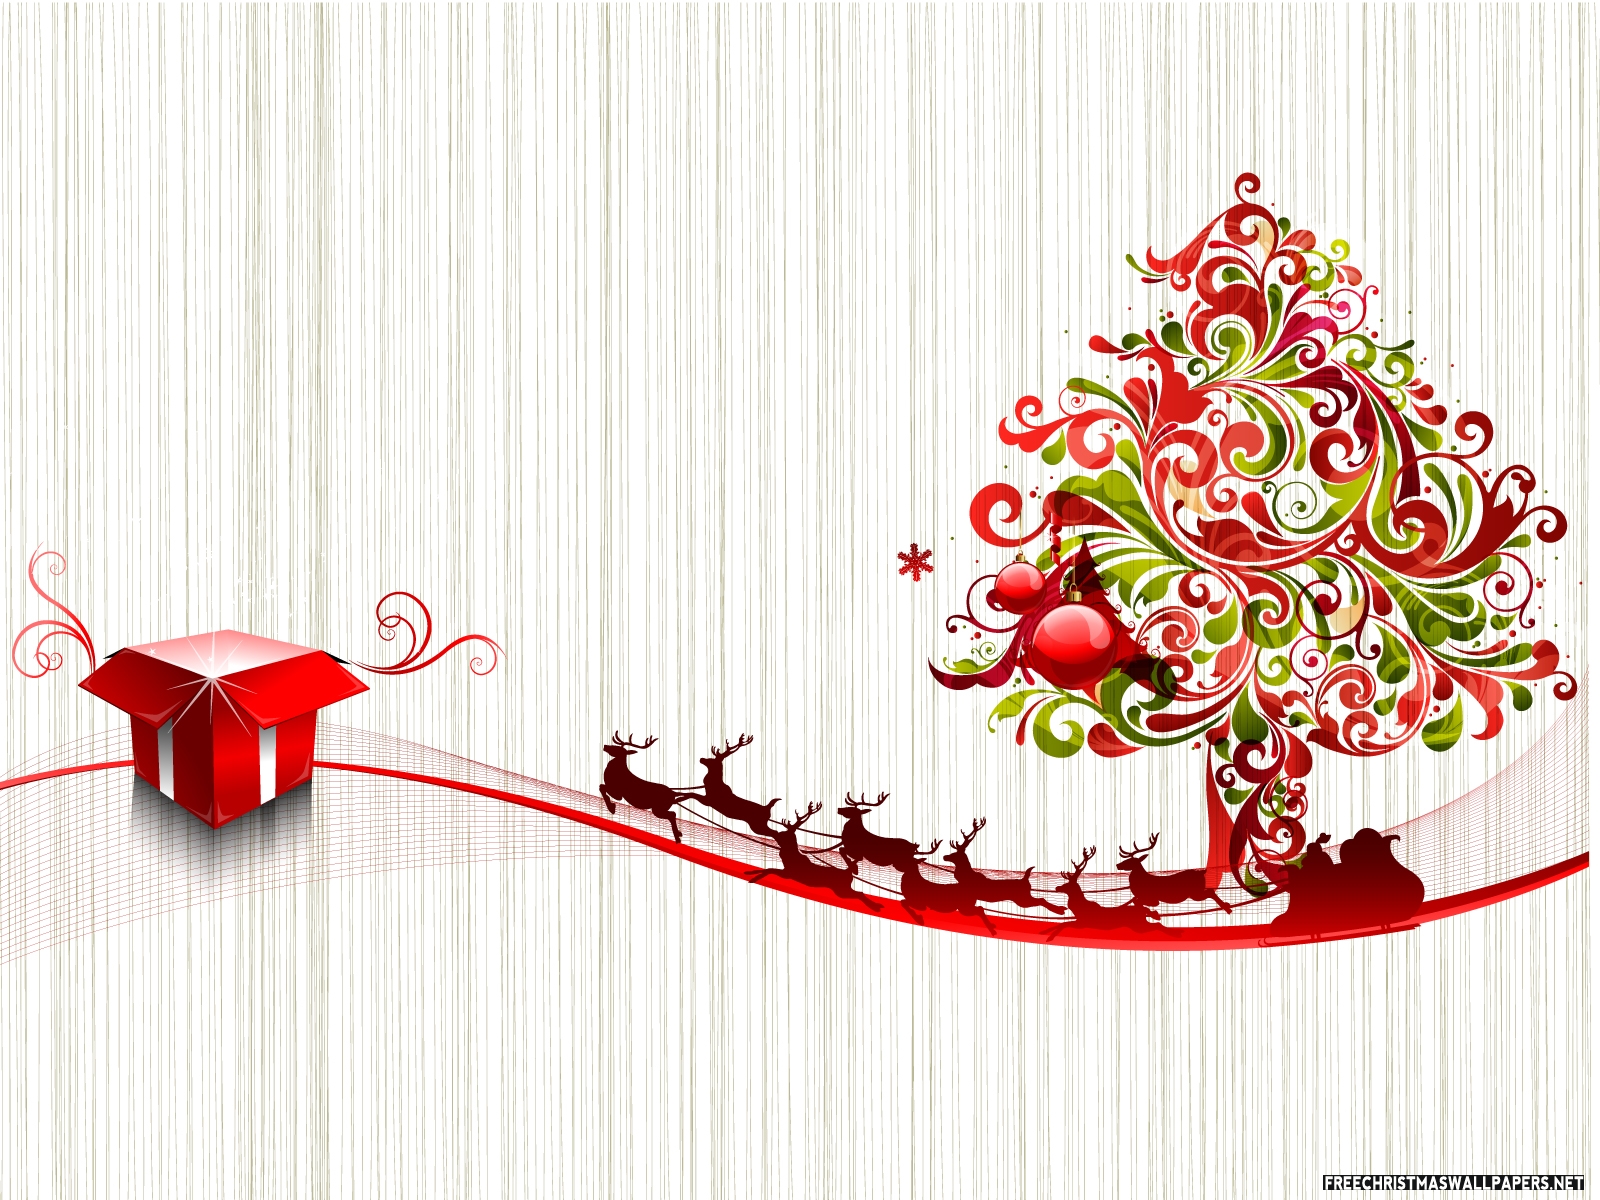 クリスマスの日の壁紙,クリスマスの飾り,クリスマスツリー,ホリー,クリスマスオーナメント,オーナメント